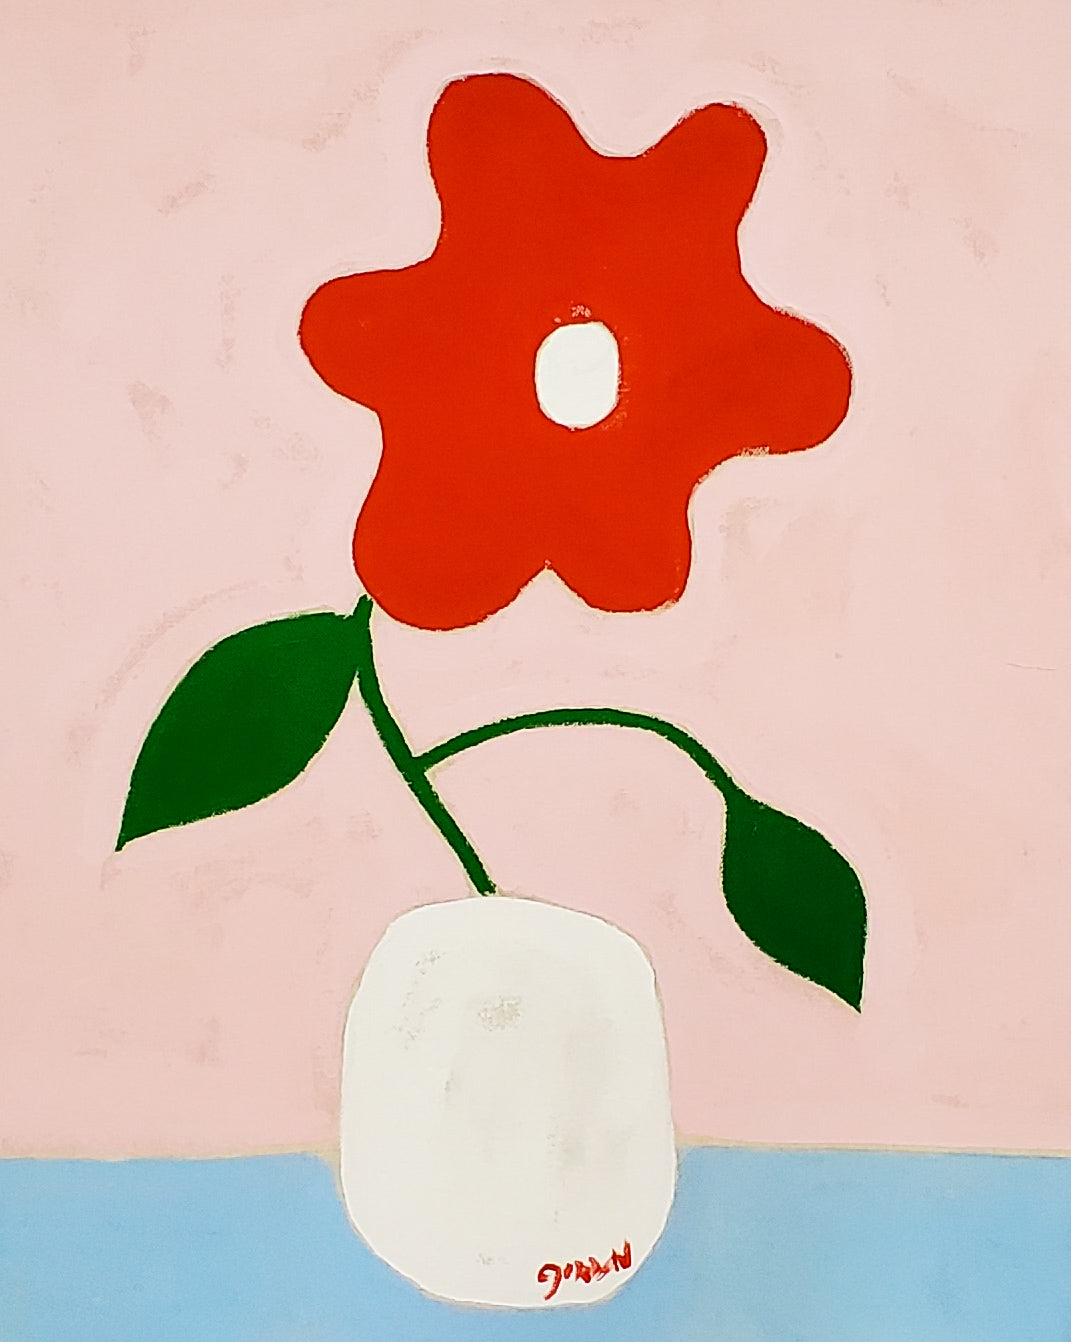 Gordan Douglas Ball, "Red Flower"